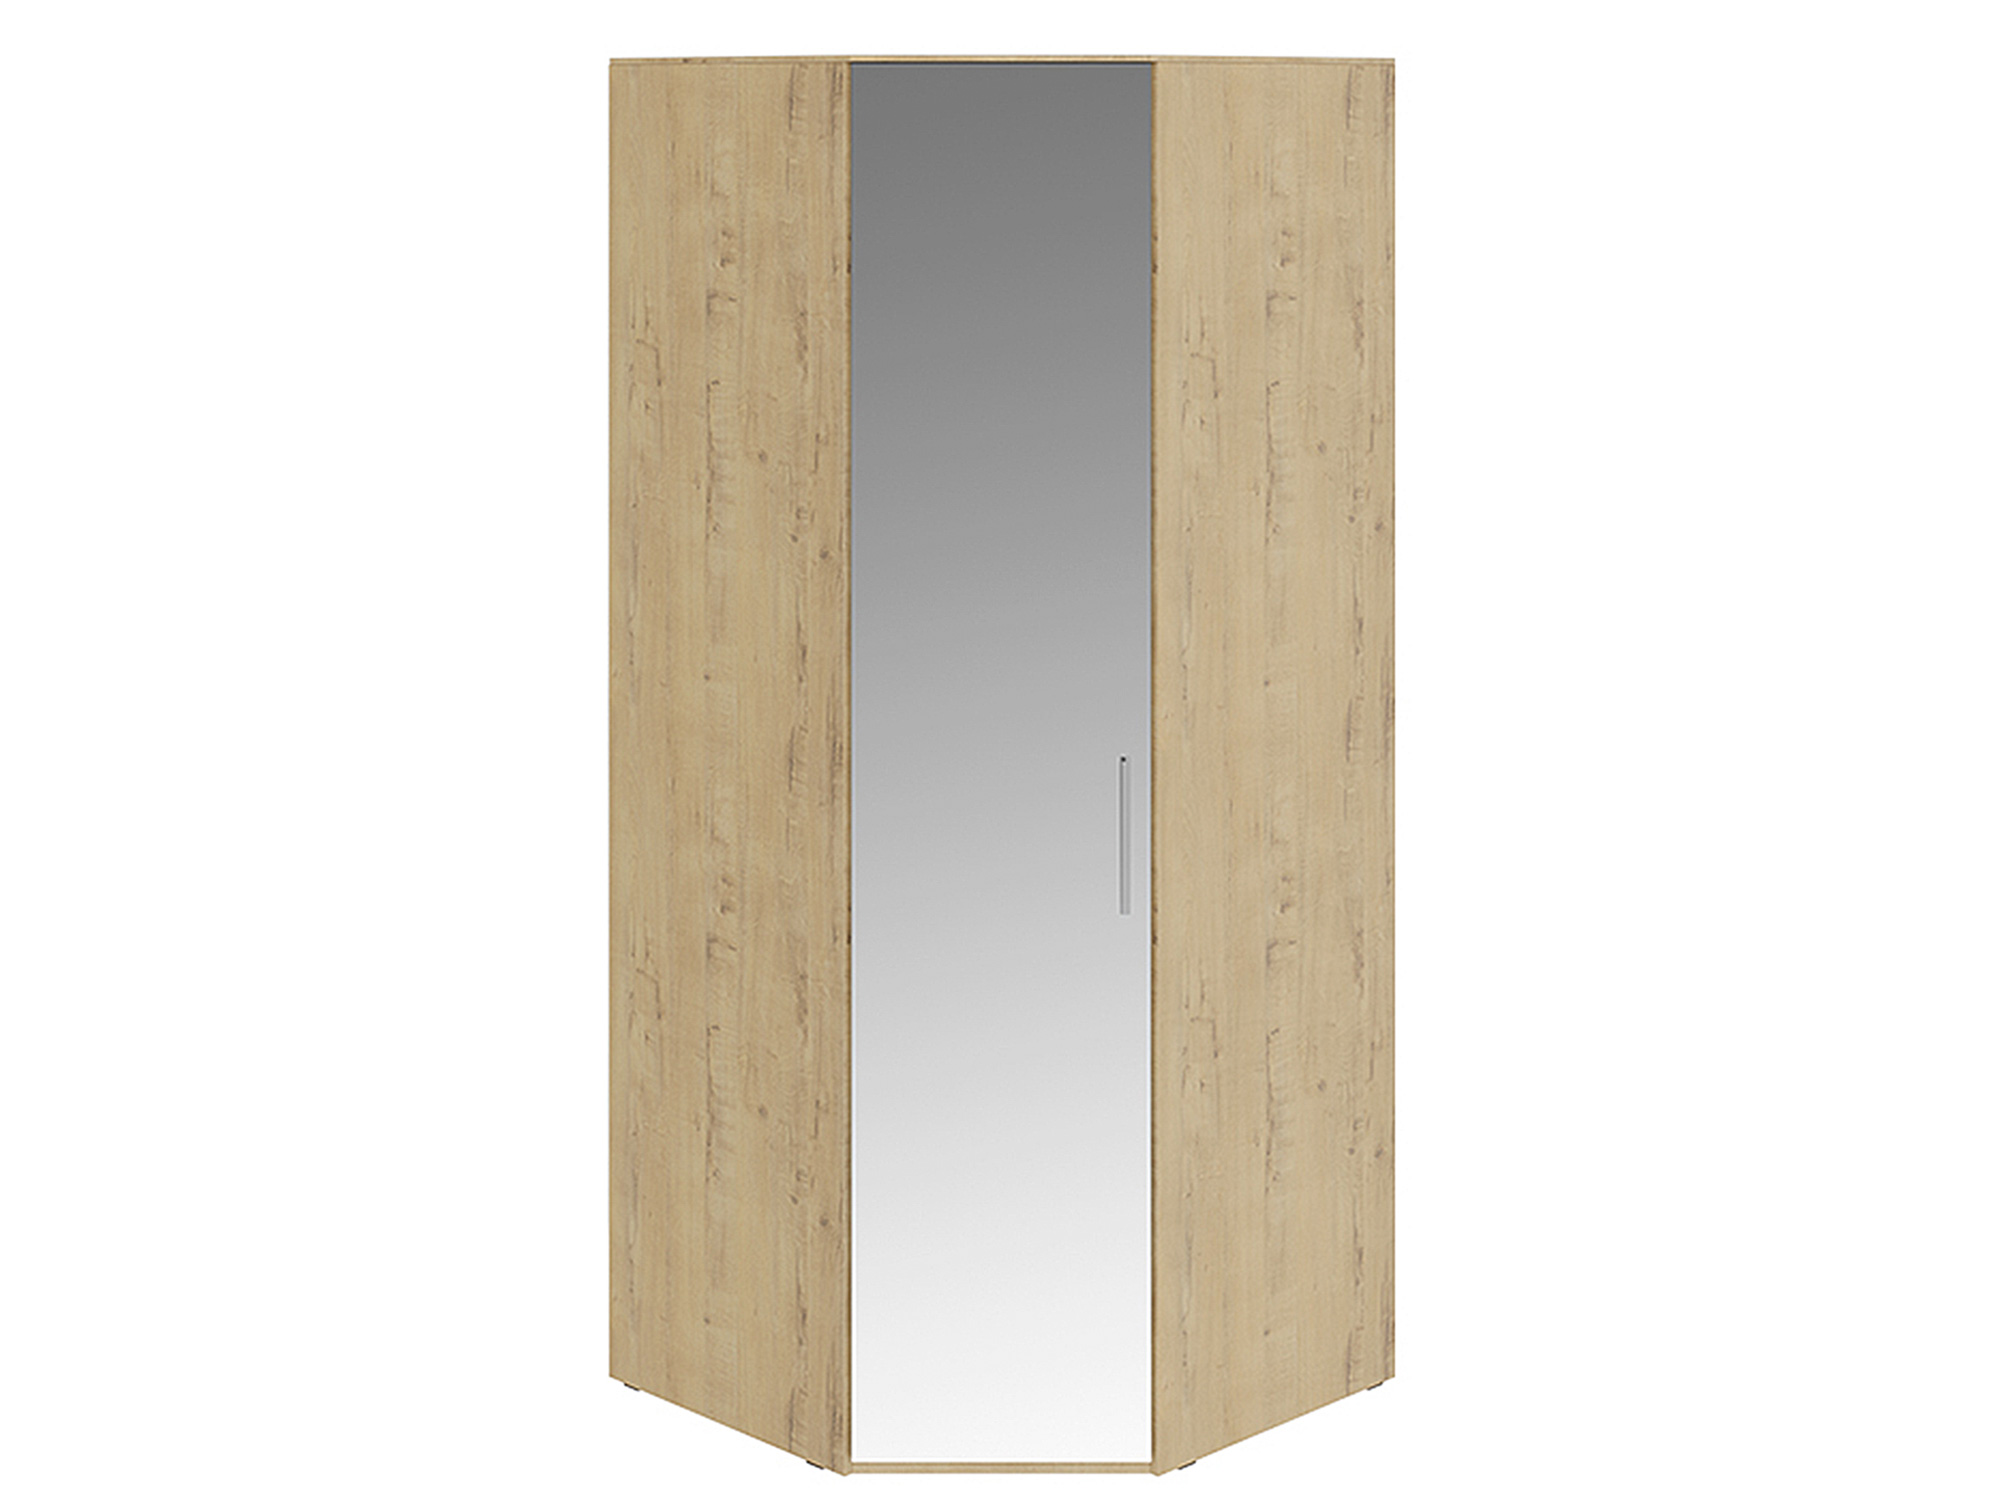 Шкаф угловой с 1 зеркальной дверью левый Николь Зеркало, , Бежевый, МДФ, ЛДСП шкаф угловой с 1 зеркальной дверью либерти коричневый лдсп зеркало